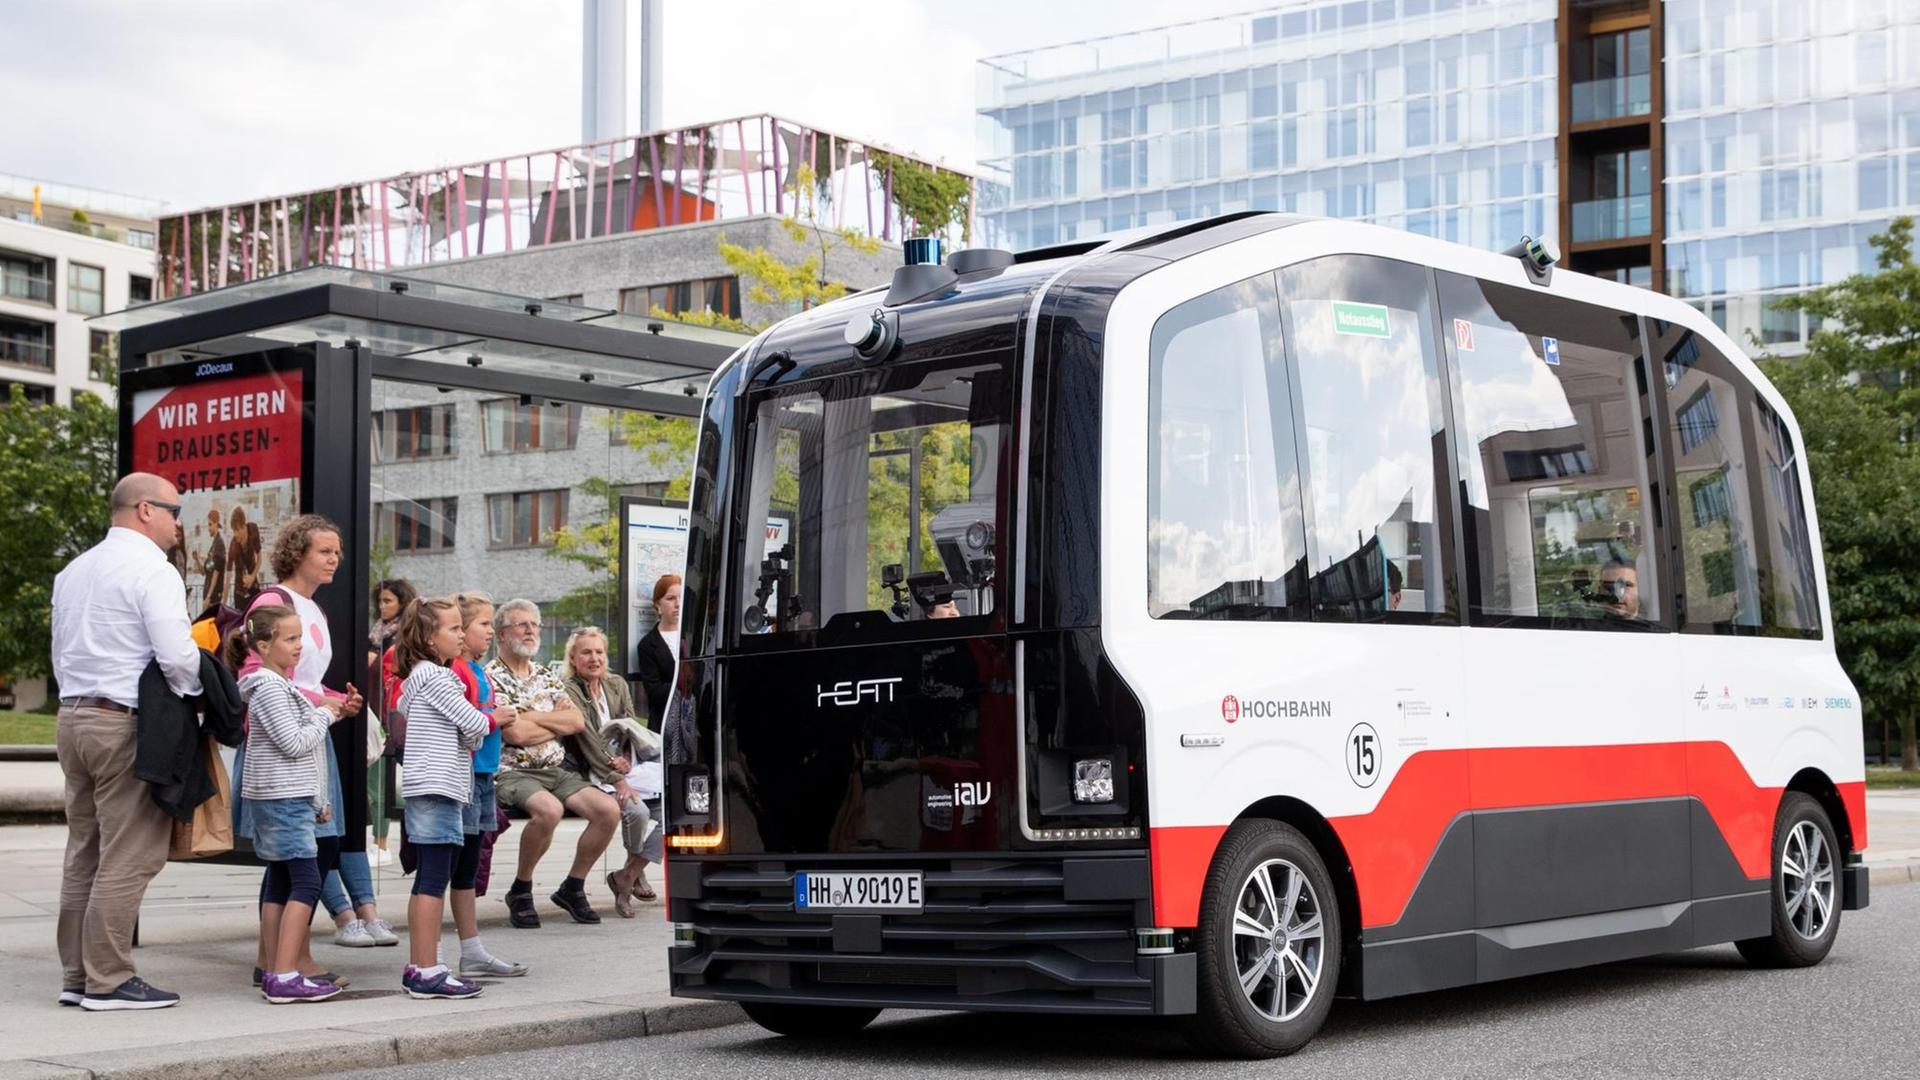 Derautonom fahrende Kleinbus HEAT ist bei einer ersten Testfahrt in der Hafencity unterwegs und hält an einer Bushaltestelle.